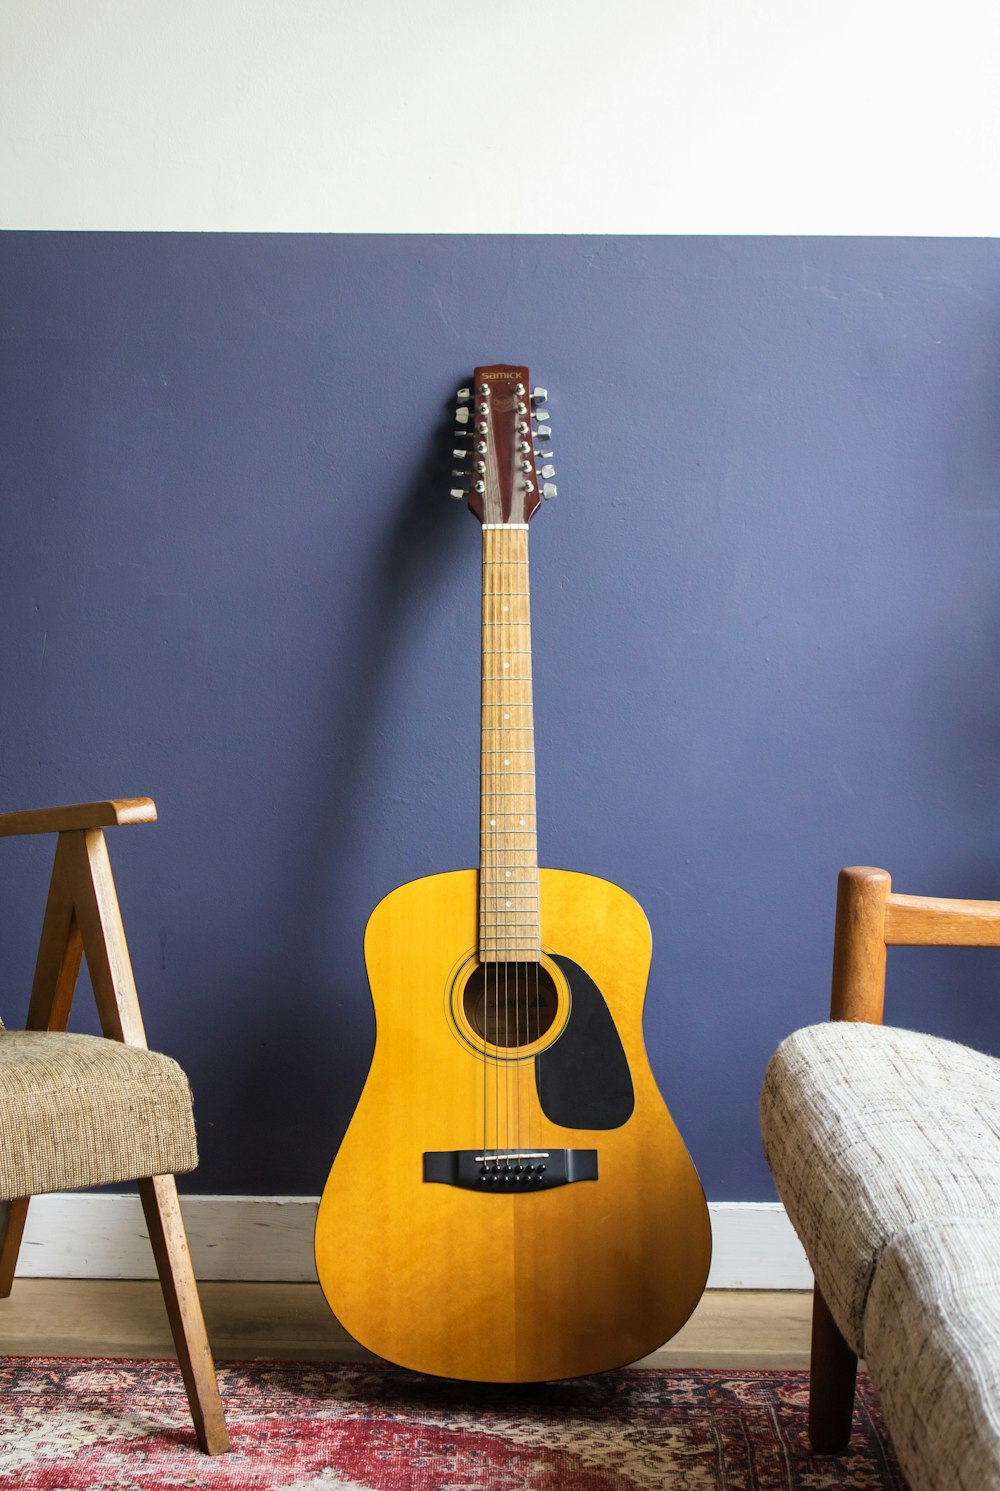 벽에 기대어 있는 노란색 어쿠스틱 기타